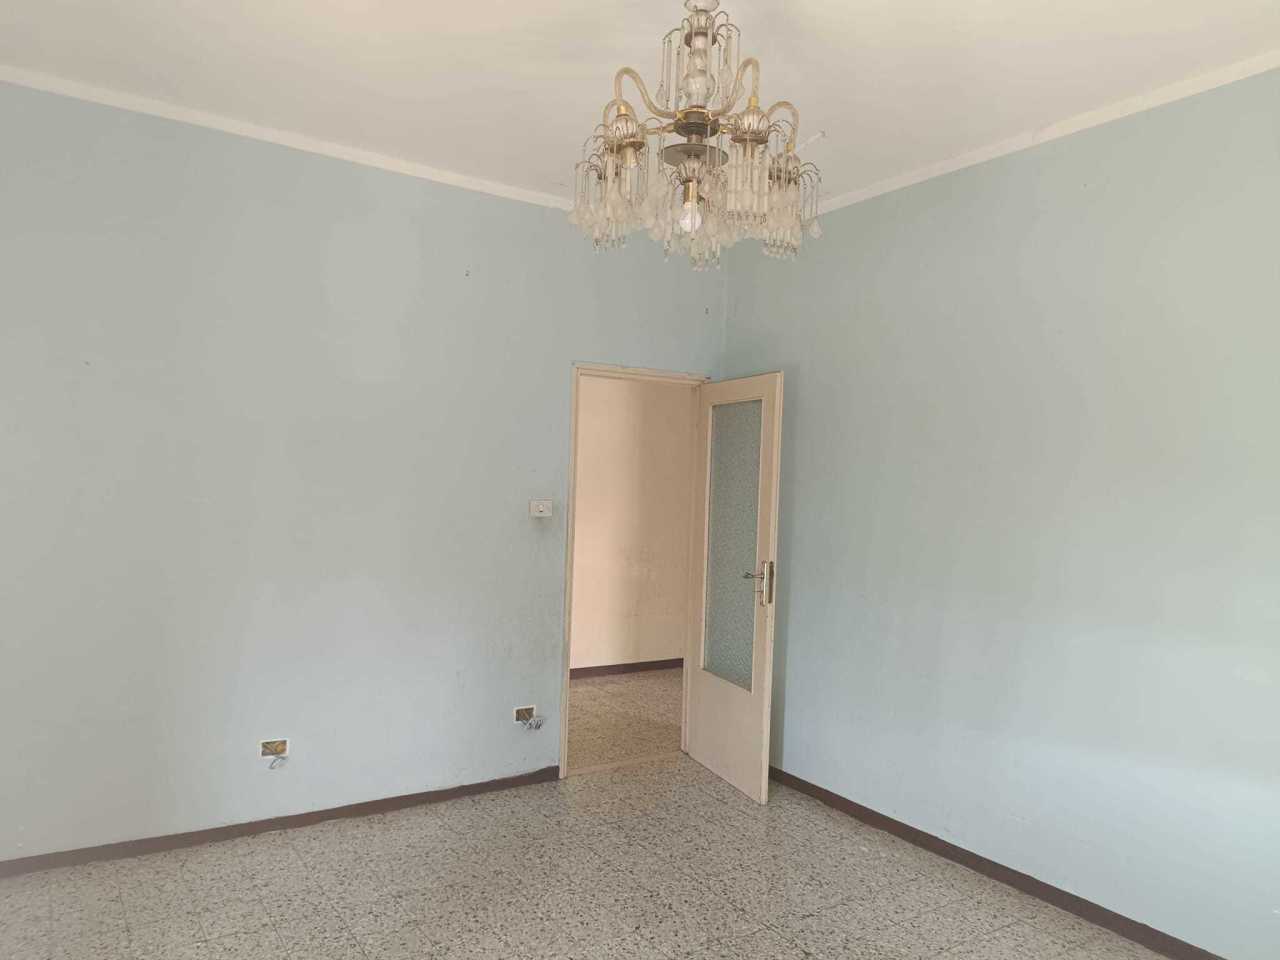 Appartamento in vendita a Varano de' Melegari, 3 locali, prezzo € 65.000 | PortaleAgenzieImmobiliari.it